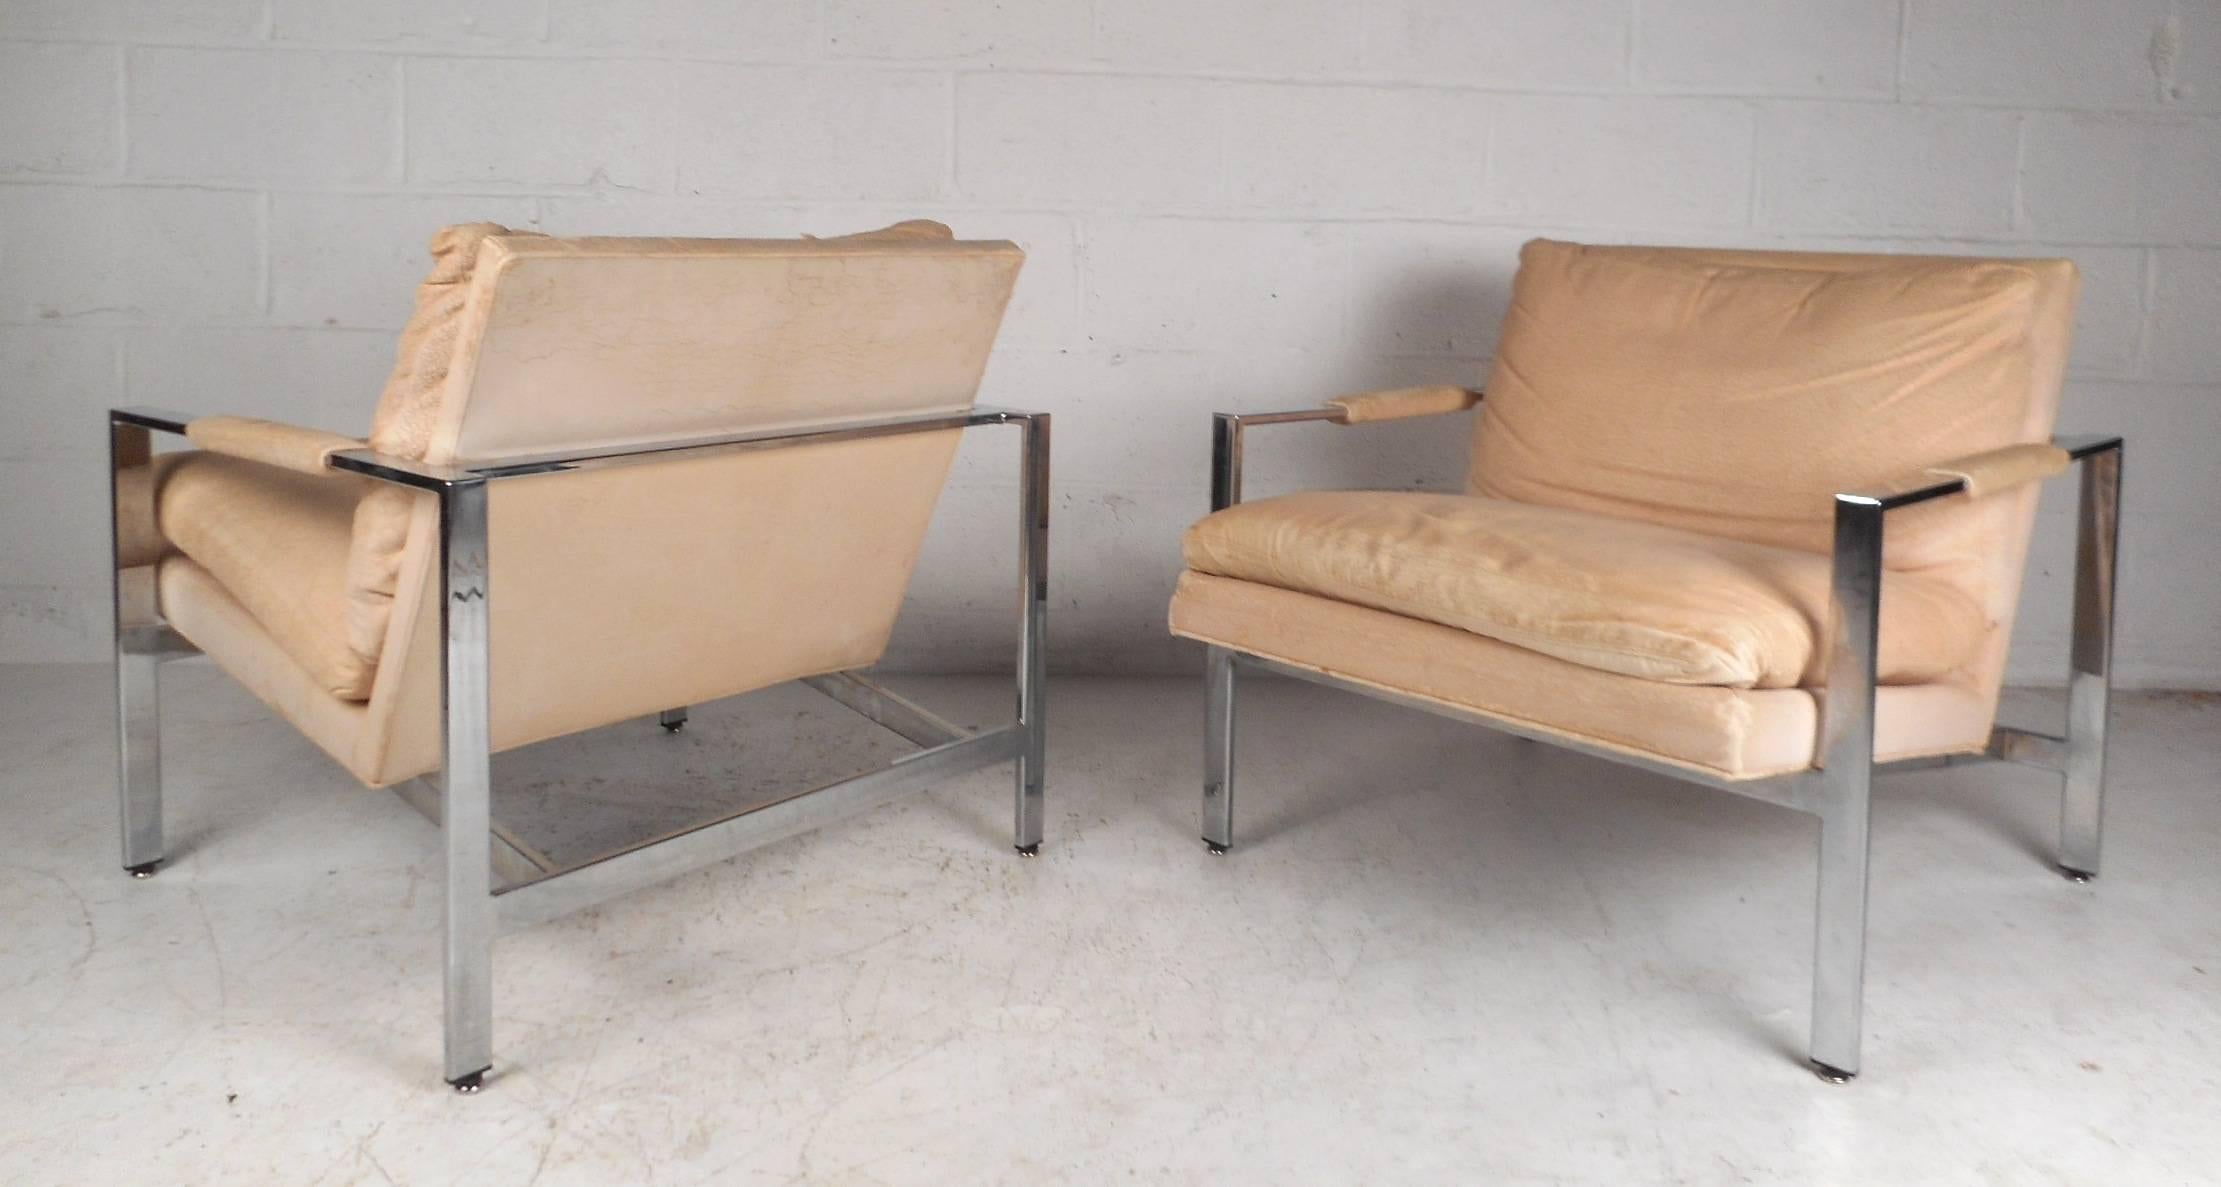 Dieses fabelhafte Paar moderner Sessel im Vintage-Stil hat ein schweres Chromgestell mit einem dick gepolsterten, abnehmbaren Sitzkissen. Die breiten Sitze, die abgewinkelte Rückenlehne und die stilvollen niedrigen Armlehnen sorgen für maximalen